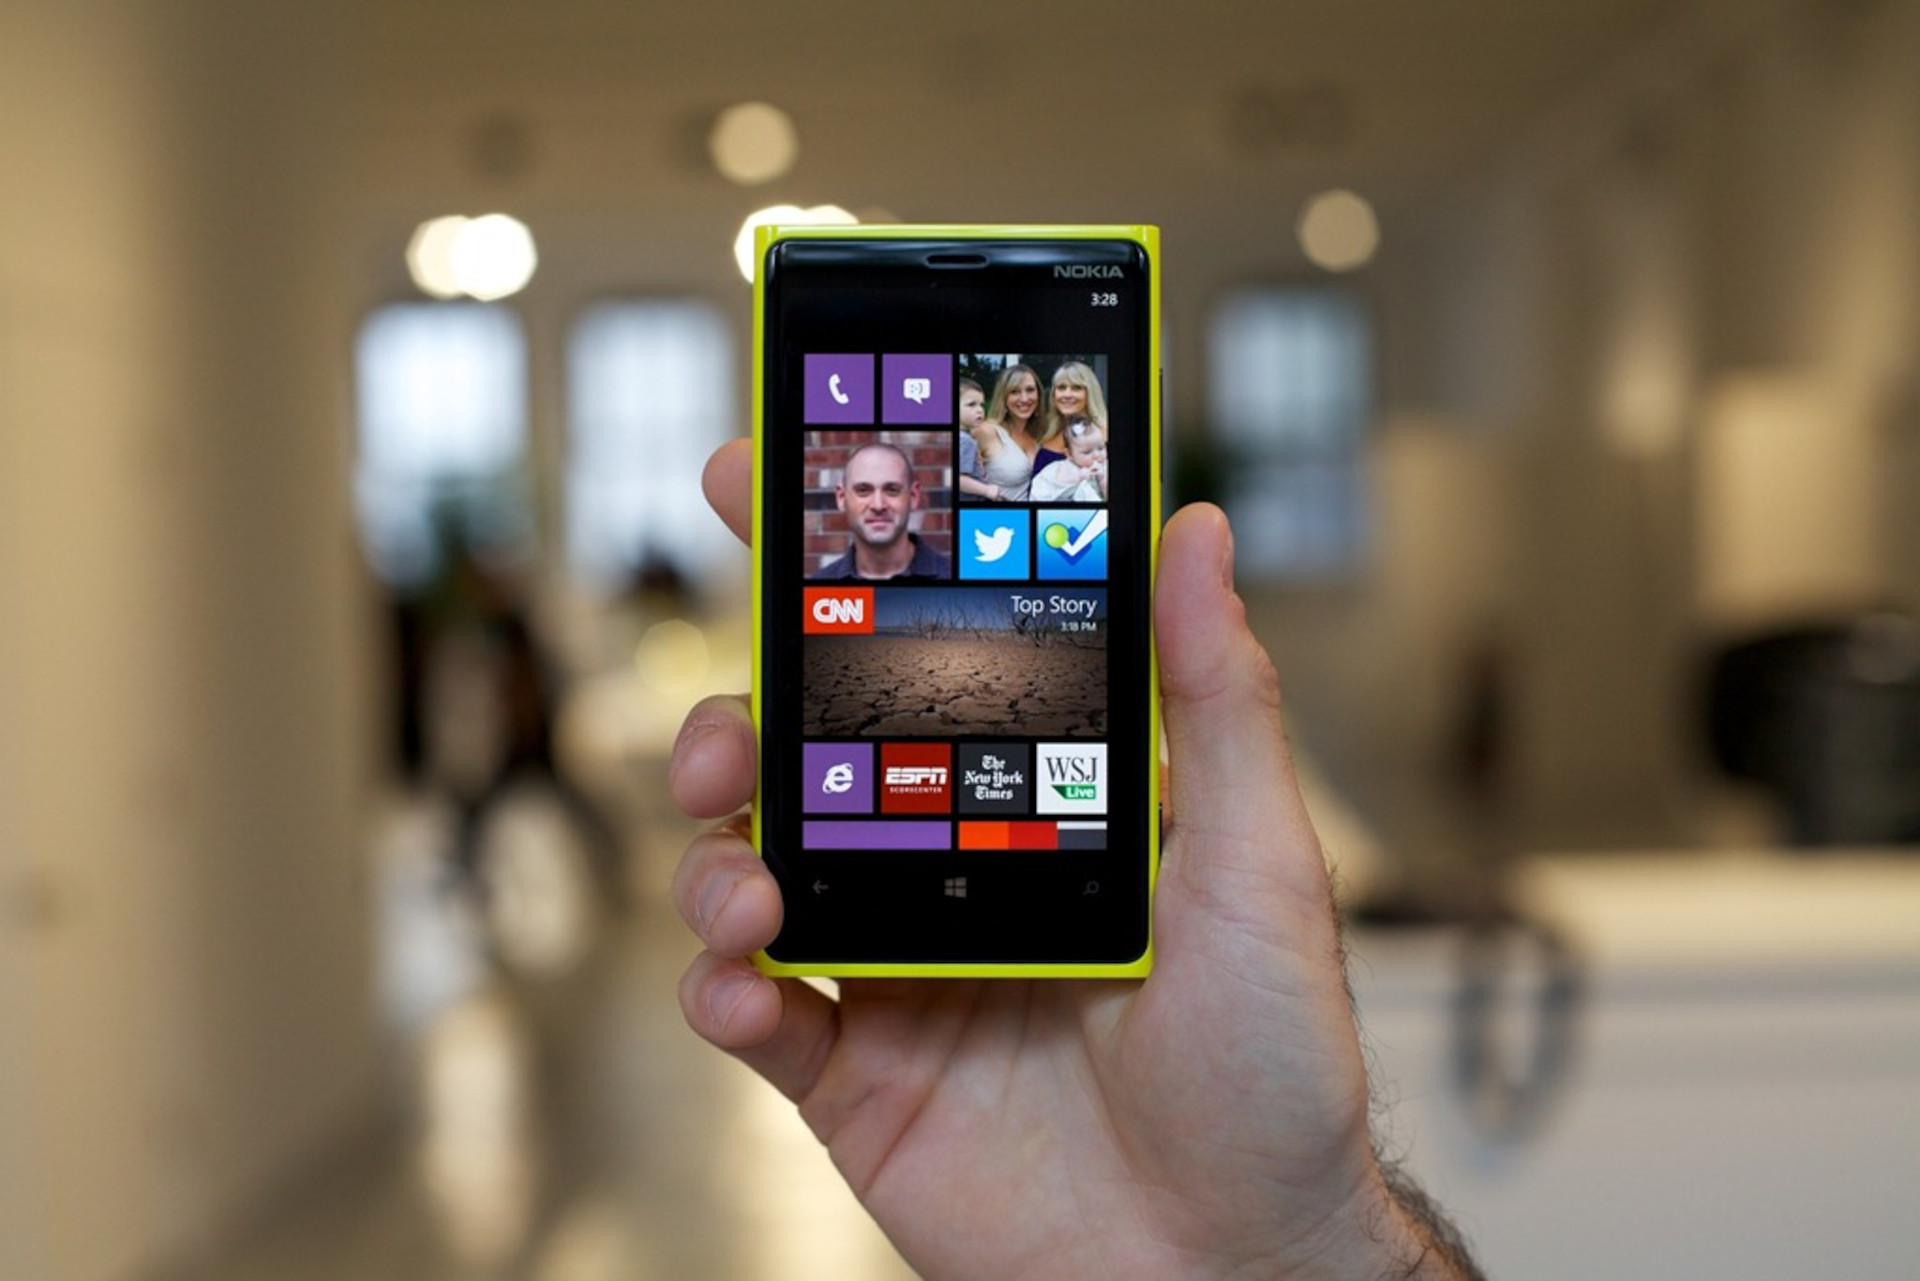 smartfon Nokia Lumia 920